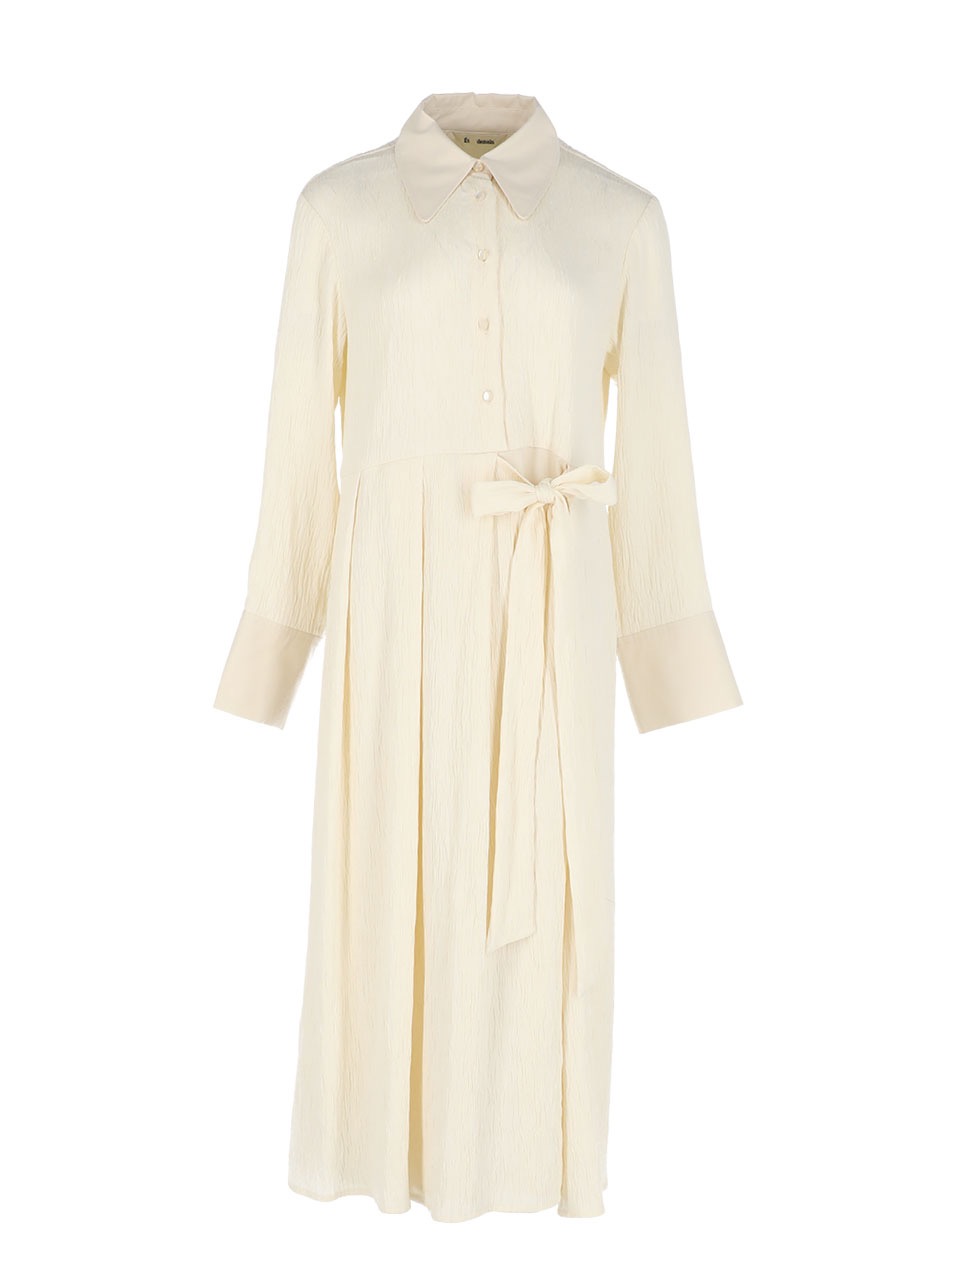 Belted crinkled cotton-blend oversize shirt dress (Ivory)